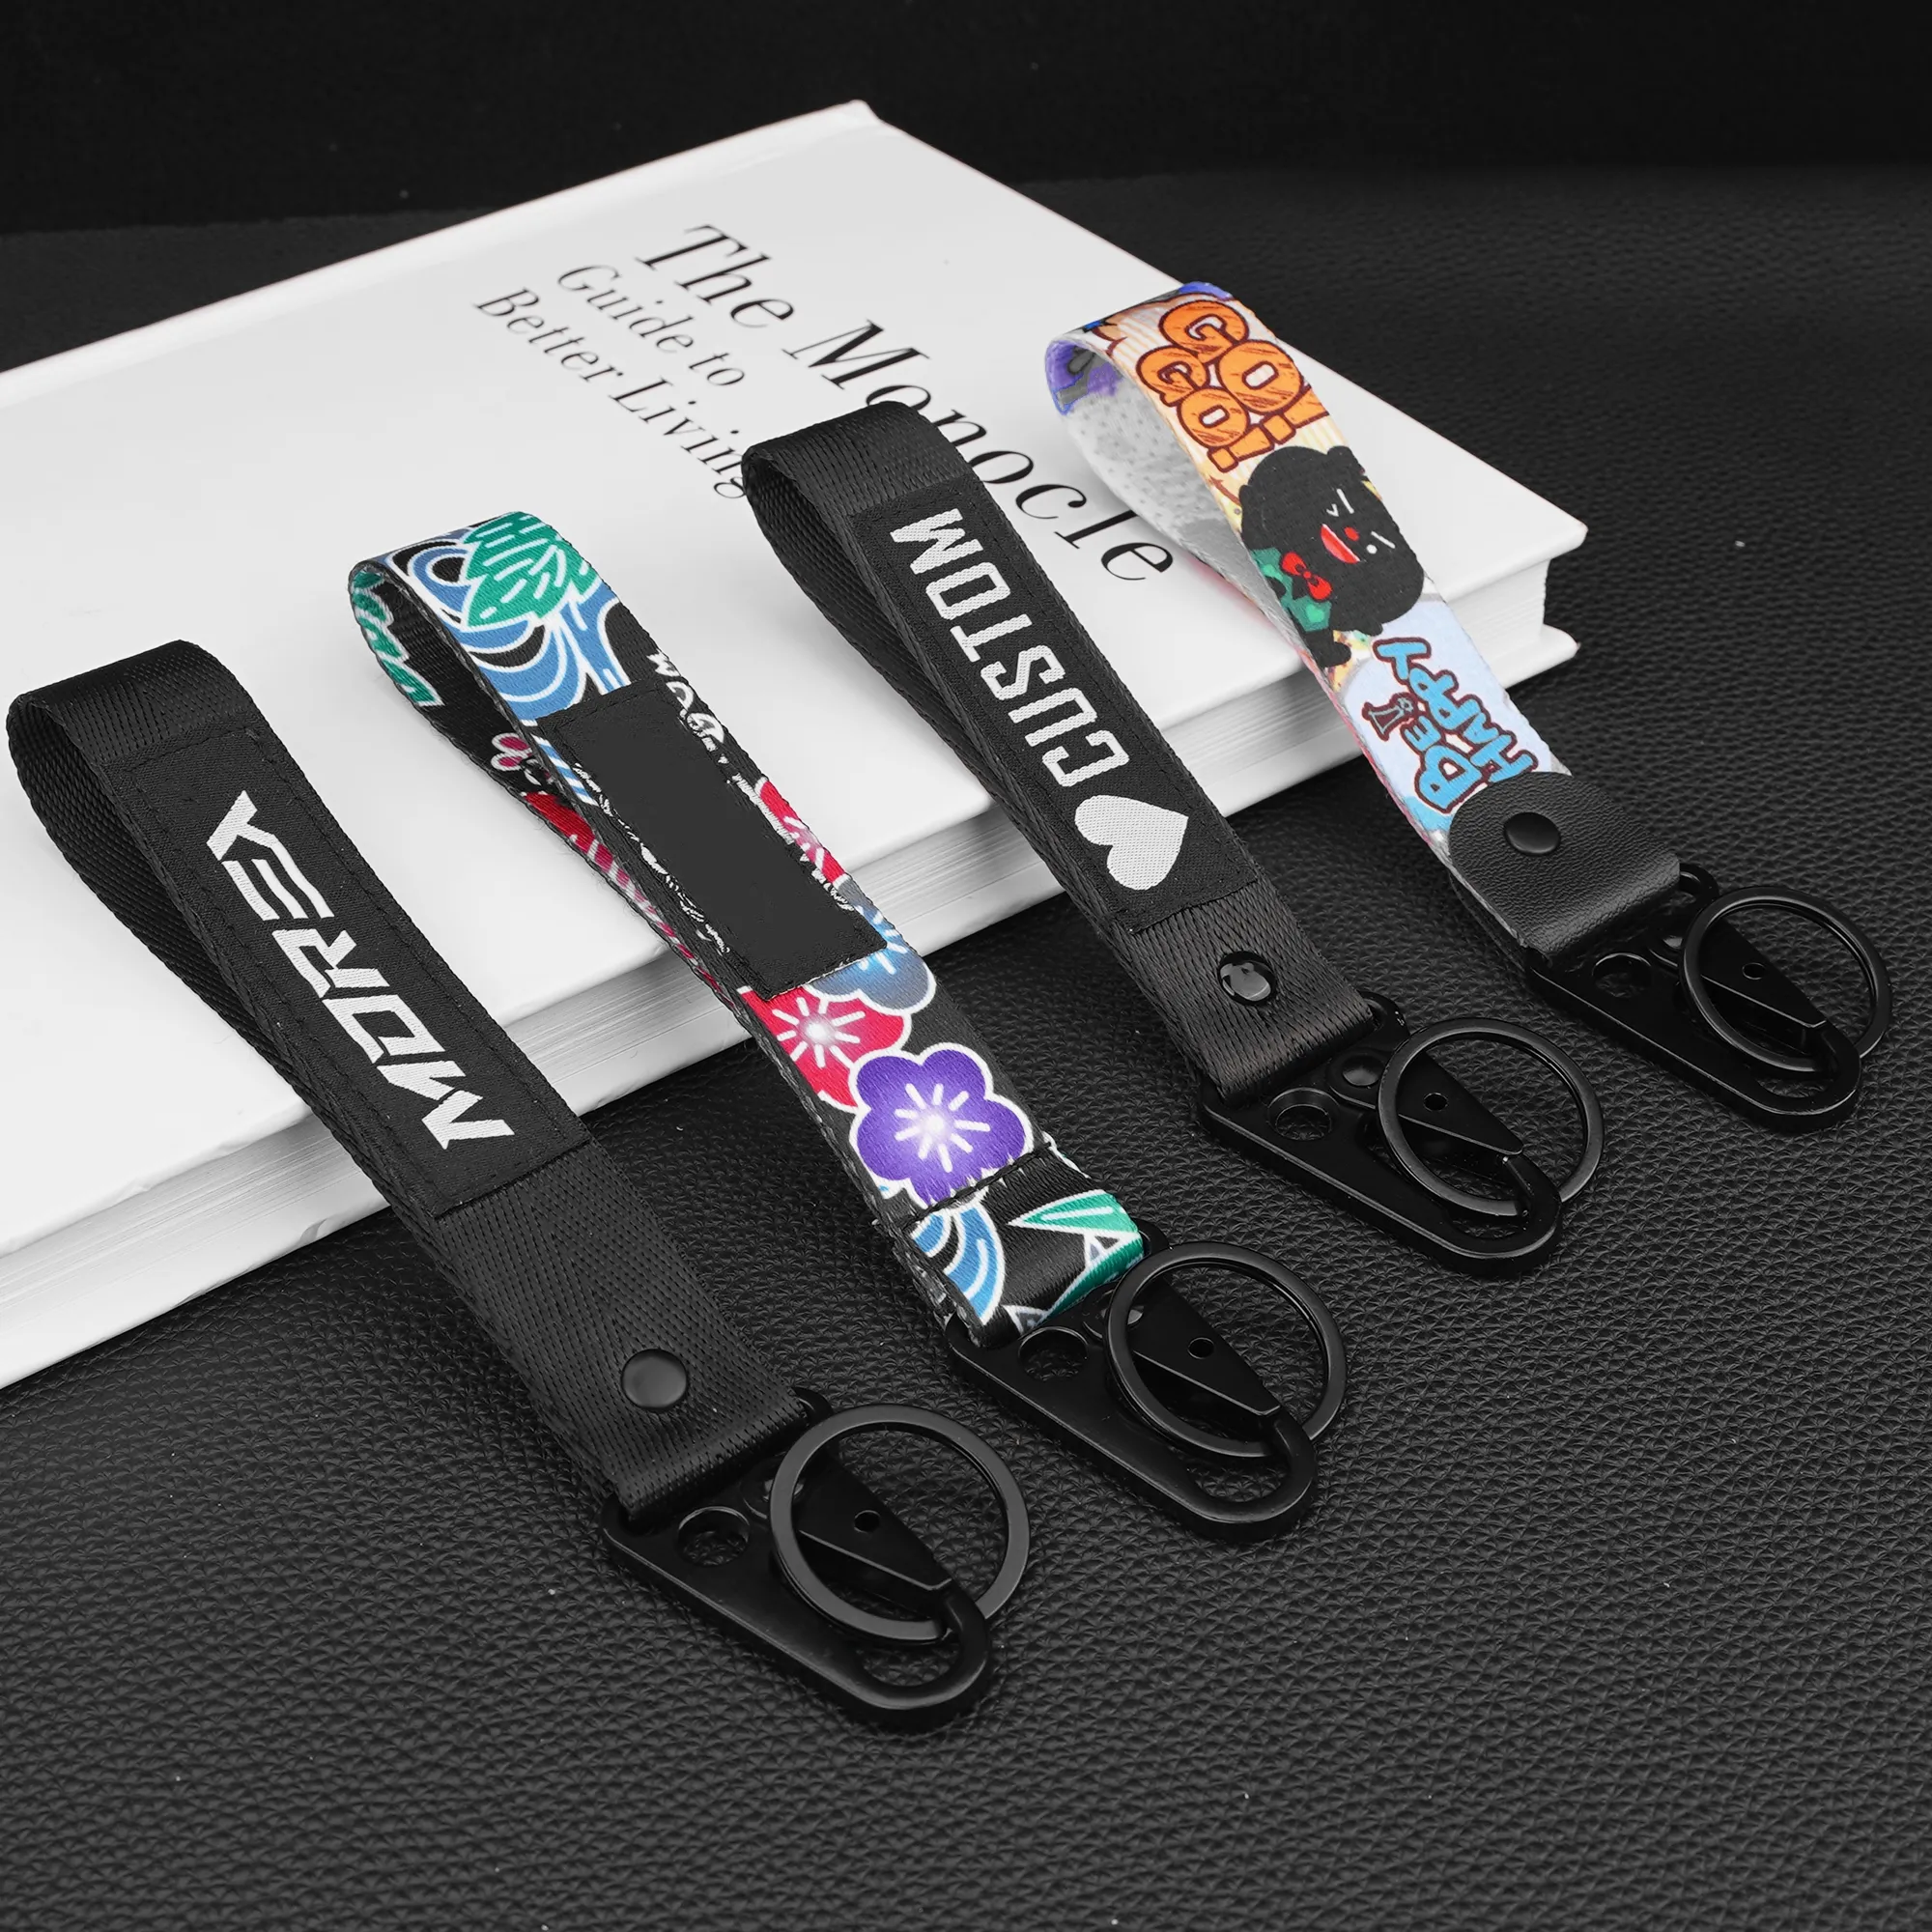 प्रोमोशनल विज्ञापन उपहार कस्टम लोगो नायलॉन लघु डोरी कलाई चाबी का गुच्छा कैरबिनर कार का पट्टा मोटरसाइकिल चाबी की चेन